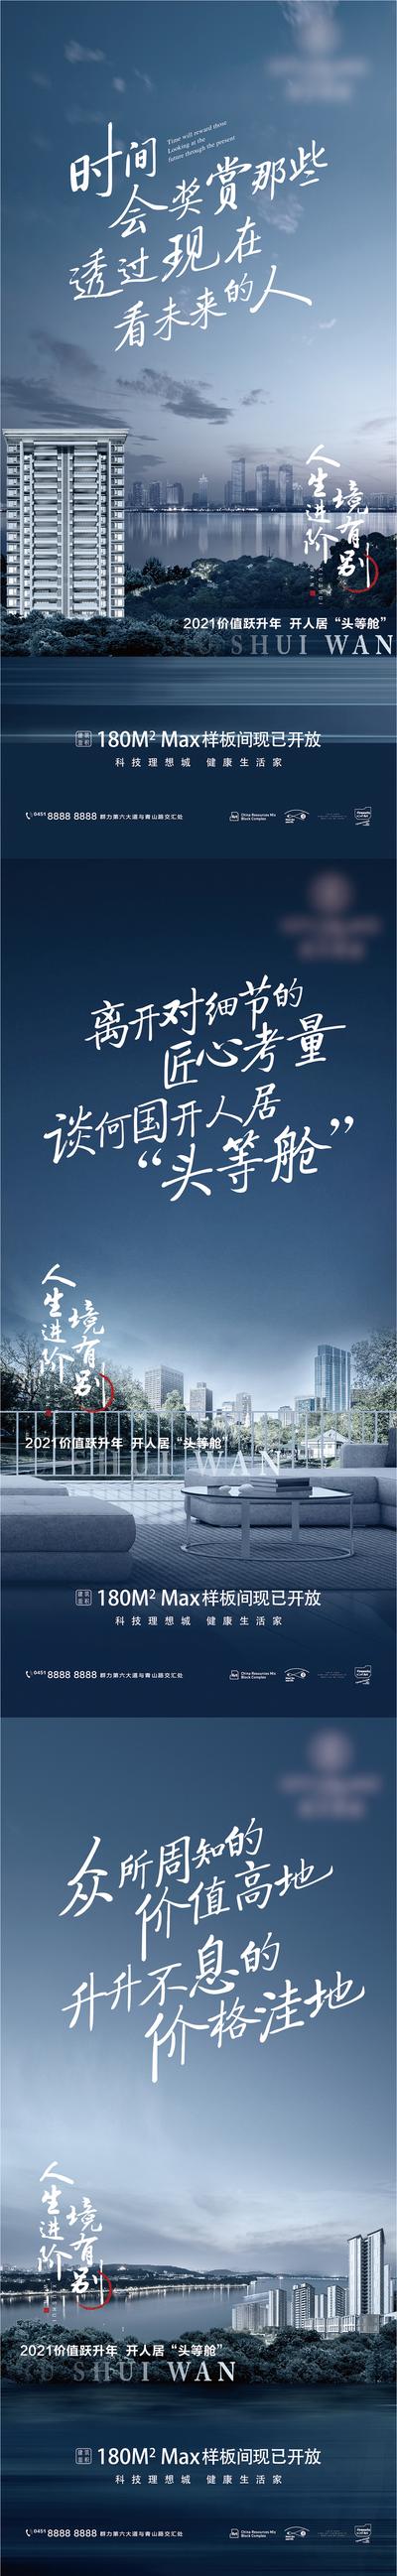 南门网 海报 地产 城市 公园 大社区 繁华 江景 滨江 系列